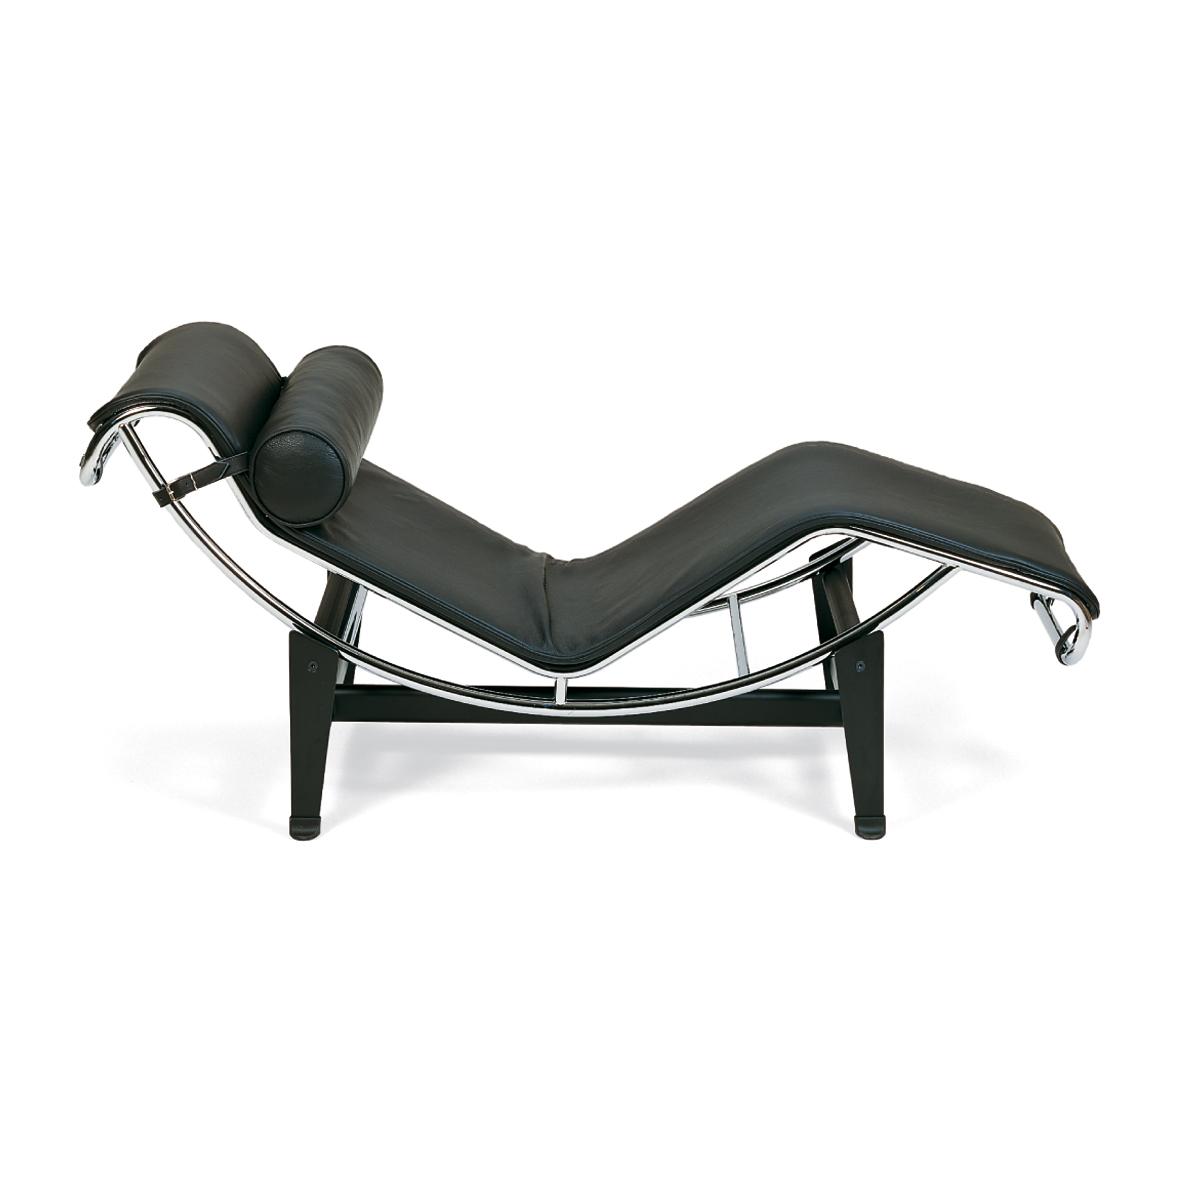 LUX103/ST Le Corbusier - Poltrona relax con rivestimento imbottito